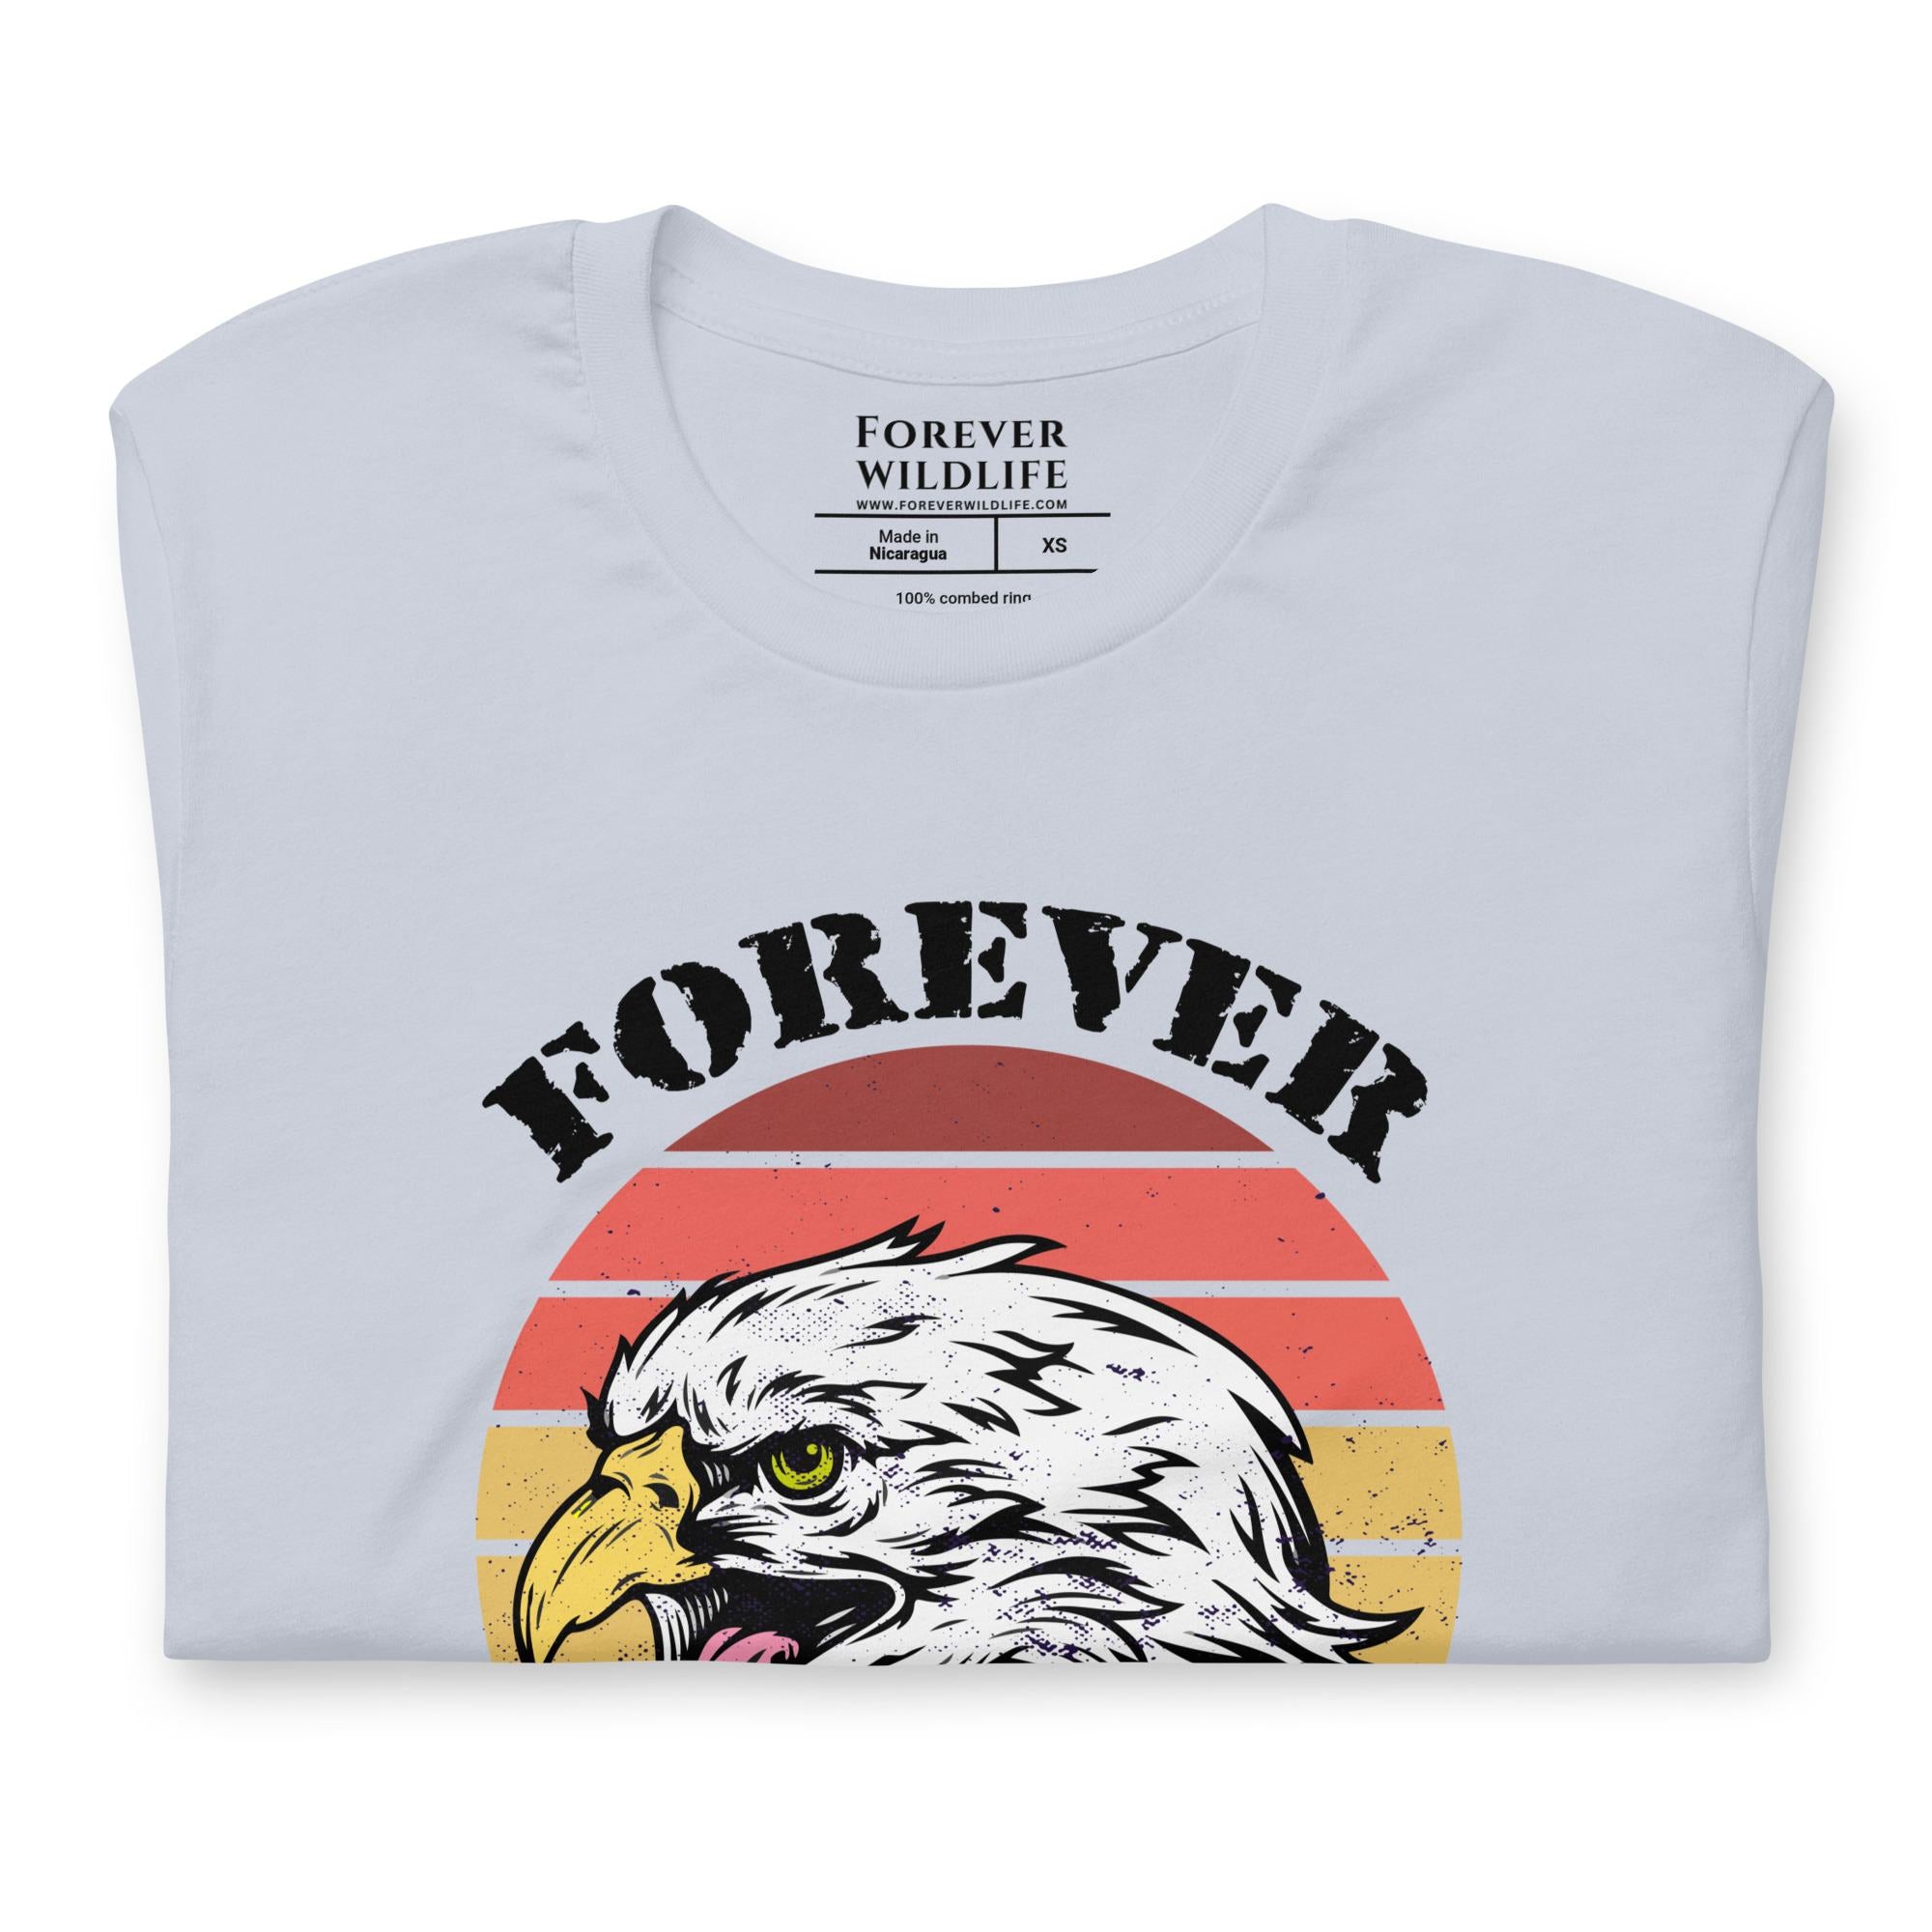 Eagle T-Shirt in Light Blue – Premium Wildlife T-Shirt Design, Eagle Shirts and Wildlife Clothing from Forever Wildlife